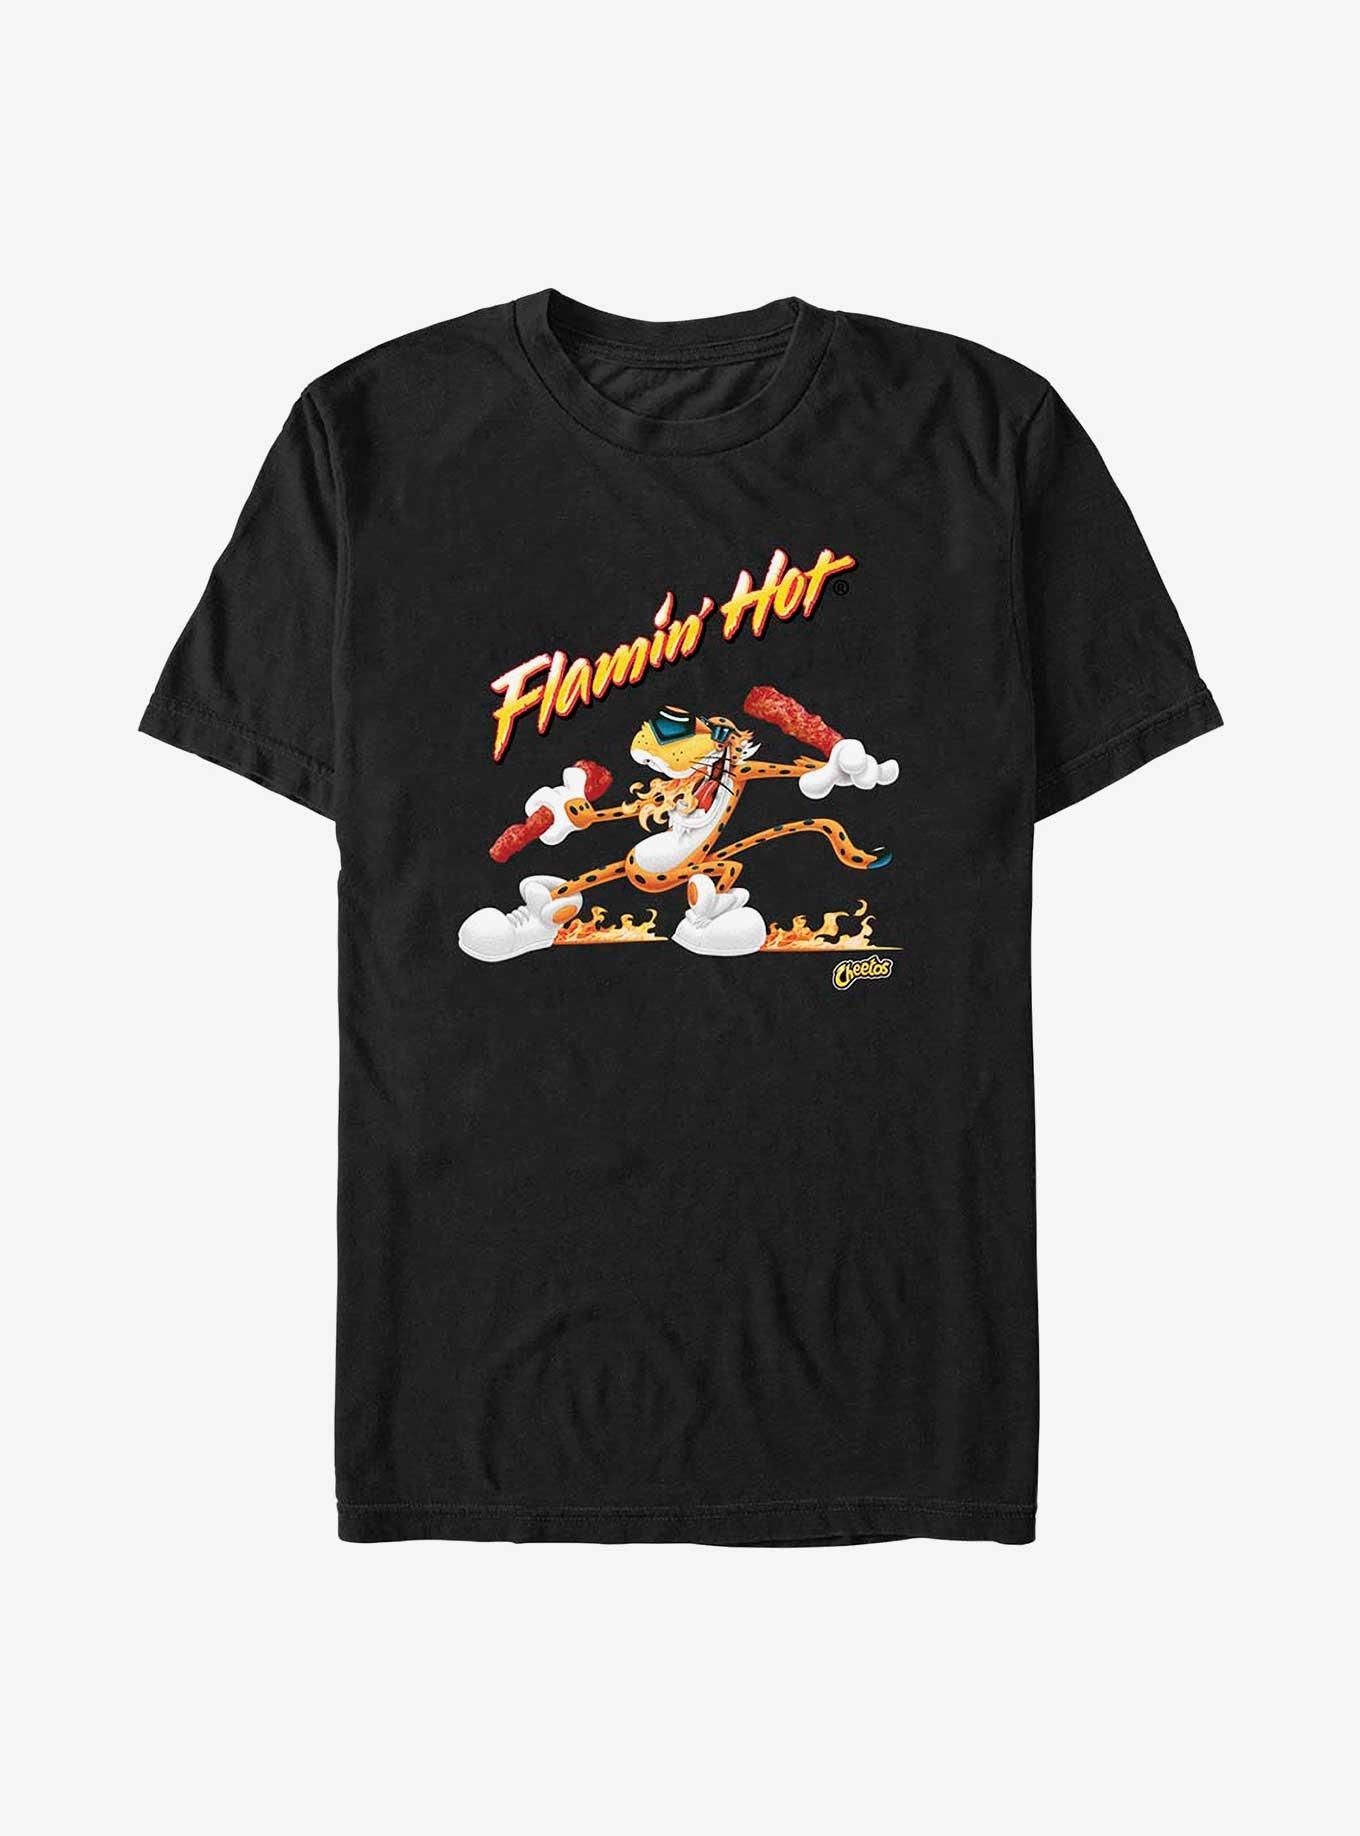 Cheetos Flamin’ Hot Chester Slide T-Shirt – LUCKY SHIRT DESIGN